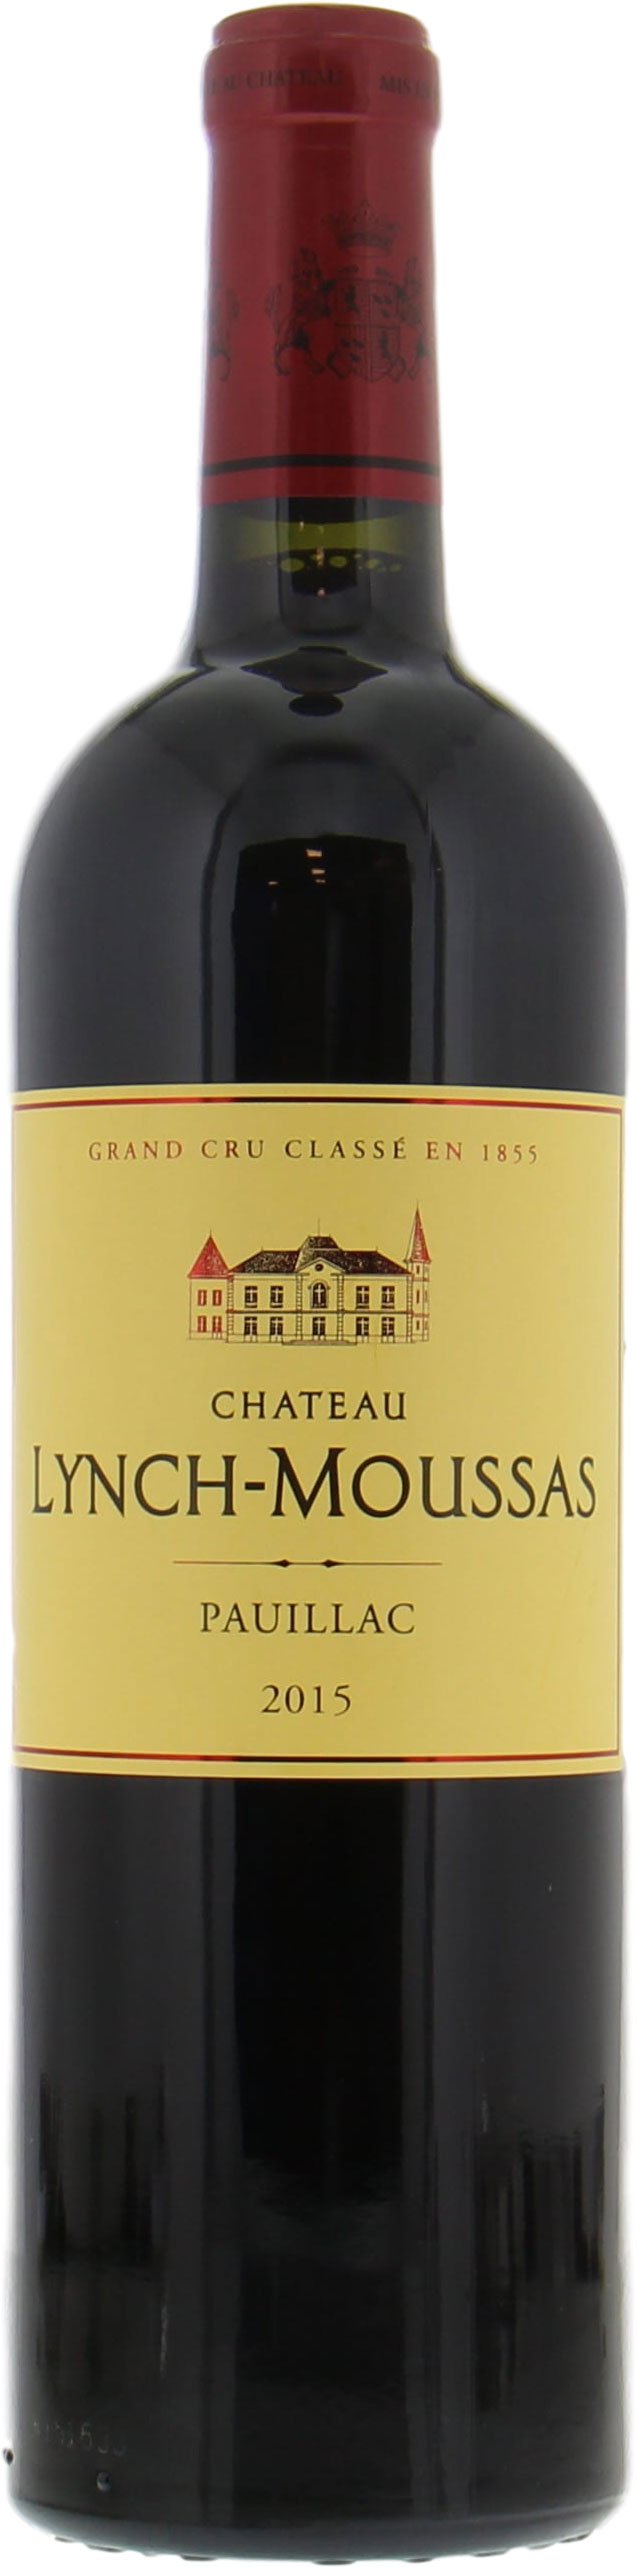 Chateau Lynch-Moussas - Chateau Lynch-Moussas 2015 Perfect